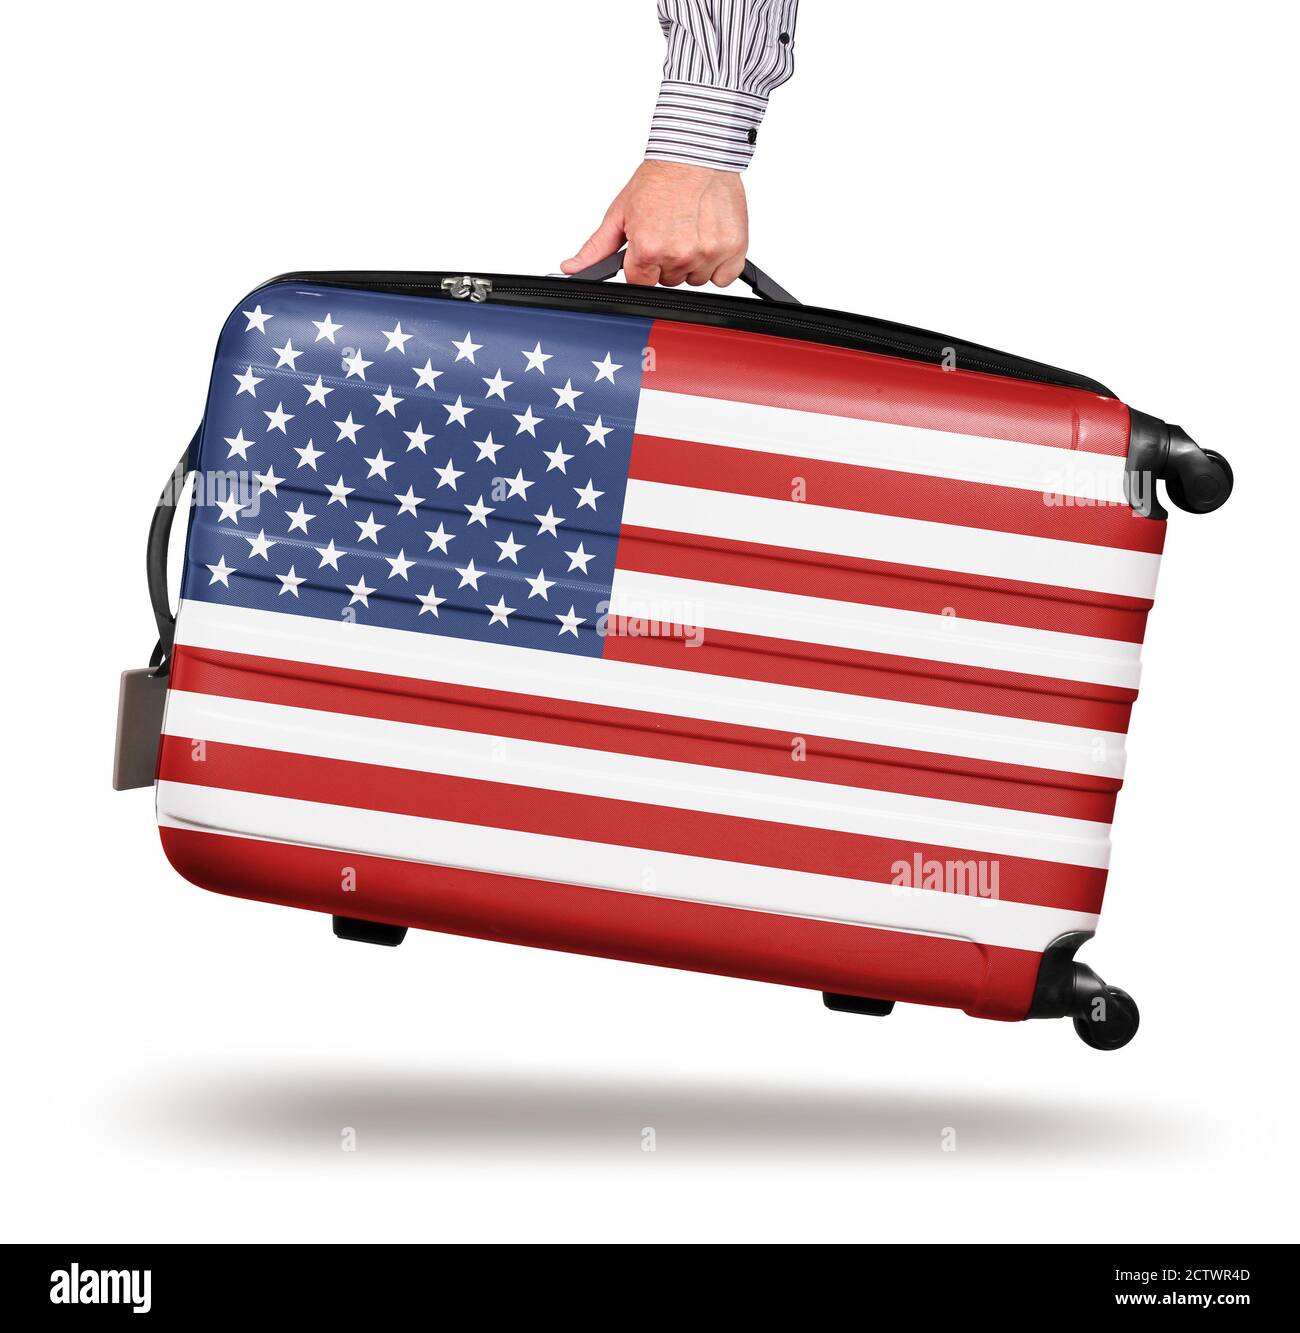 Hand hält moderne Koffer USA Flagge Design isoliert auf Weißes Reisekonzept  Stockfotografie - Alamy